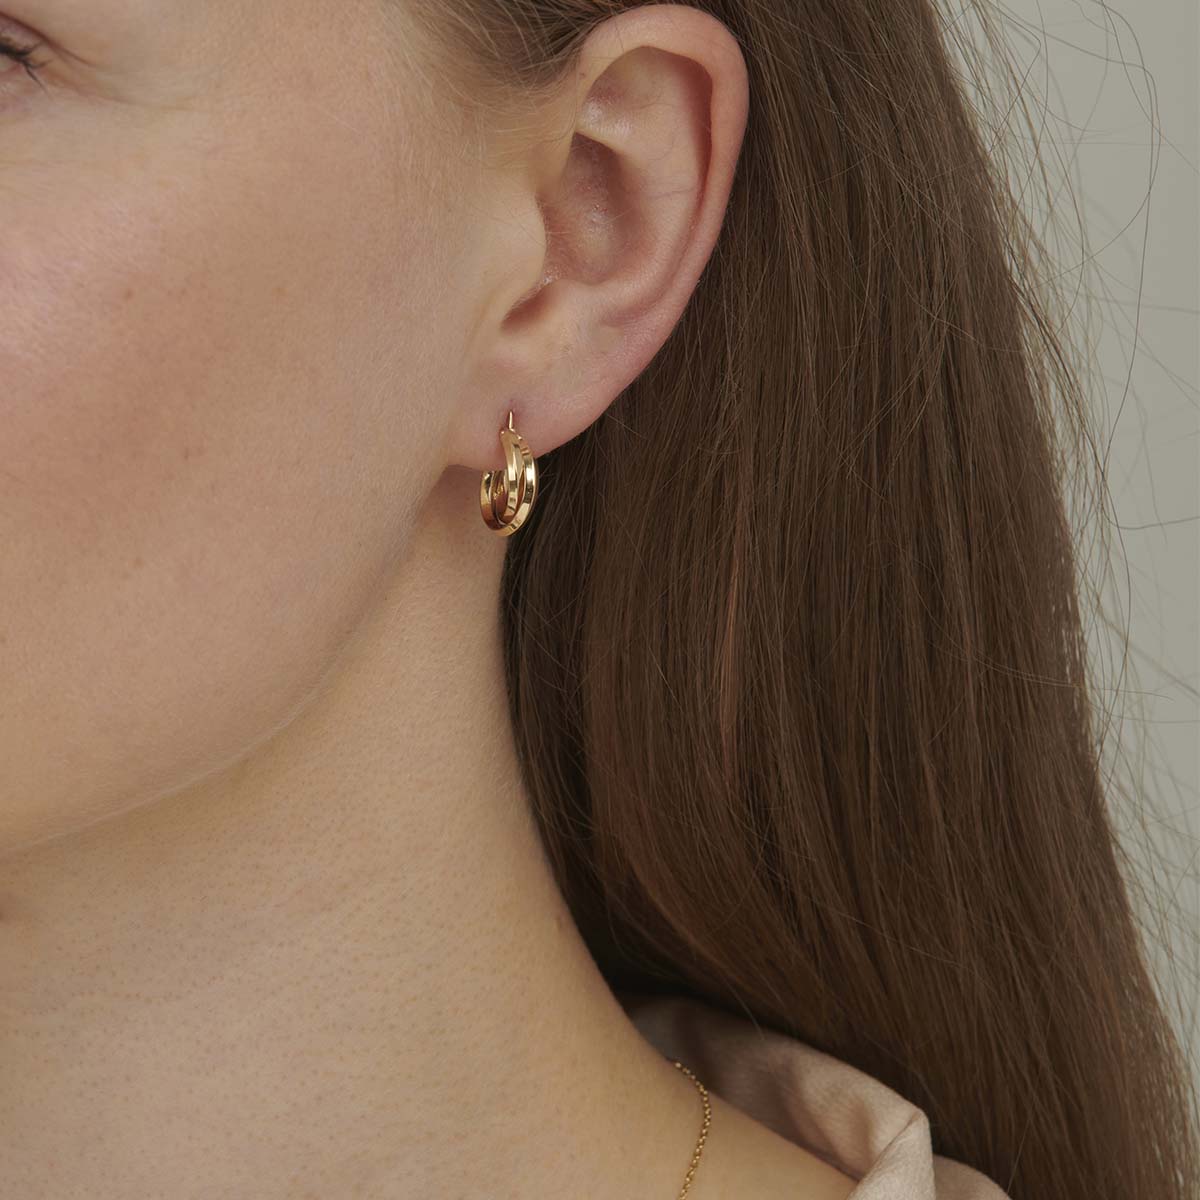 Jewelry tiny hoop earrings to fall in love | Tiny hoop earrings, Gold  earrings designs, Diamond huggie earrings